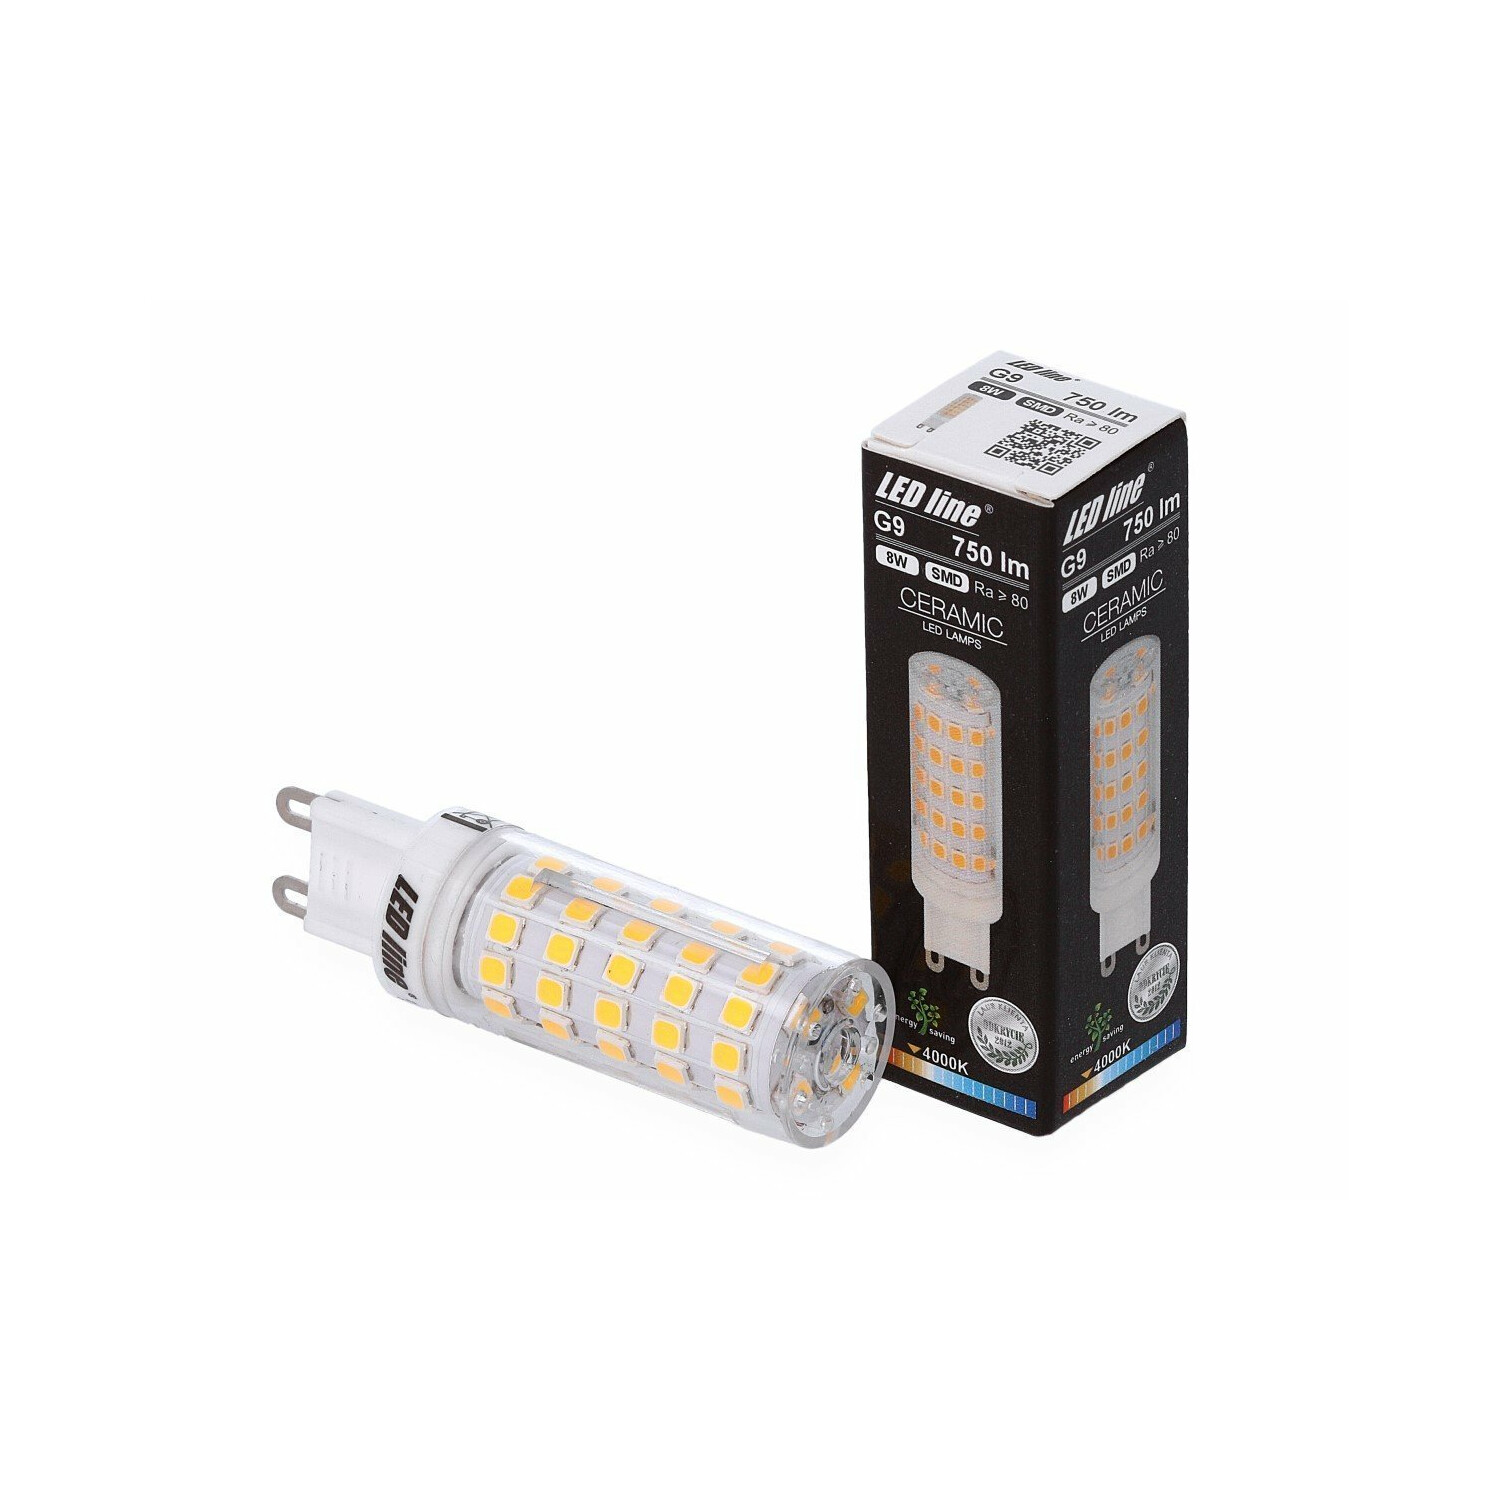 LED LINE 750 8W Leuchtmittel G9 Pack LED 6er LED Lumen Neutralweiß